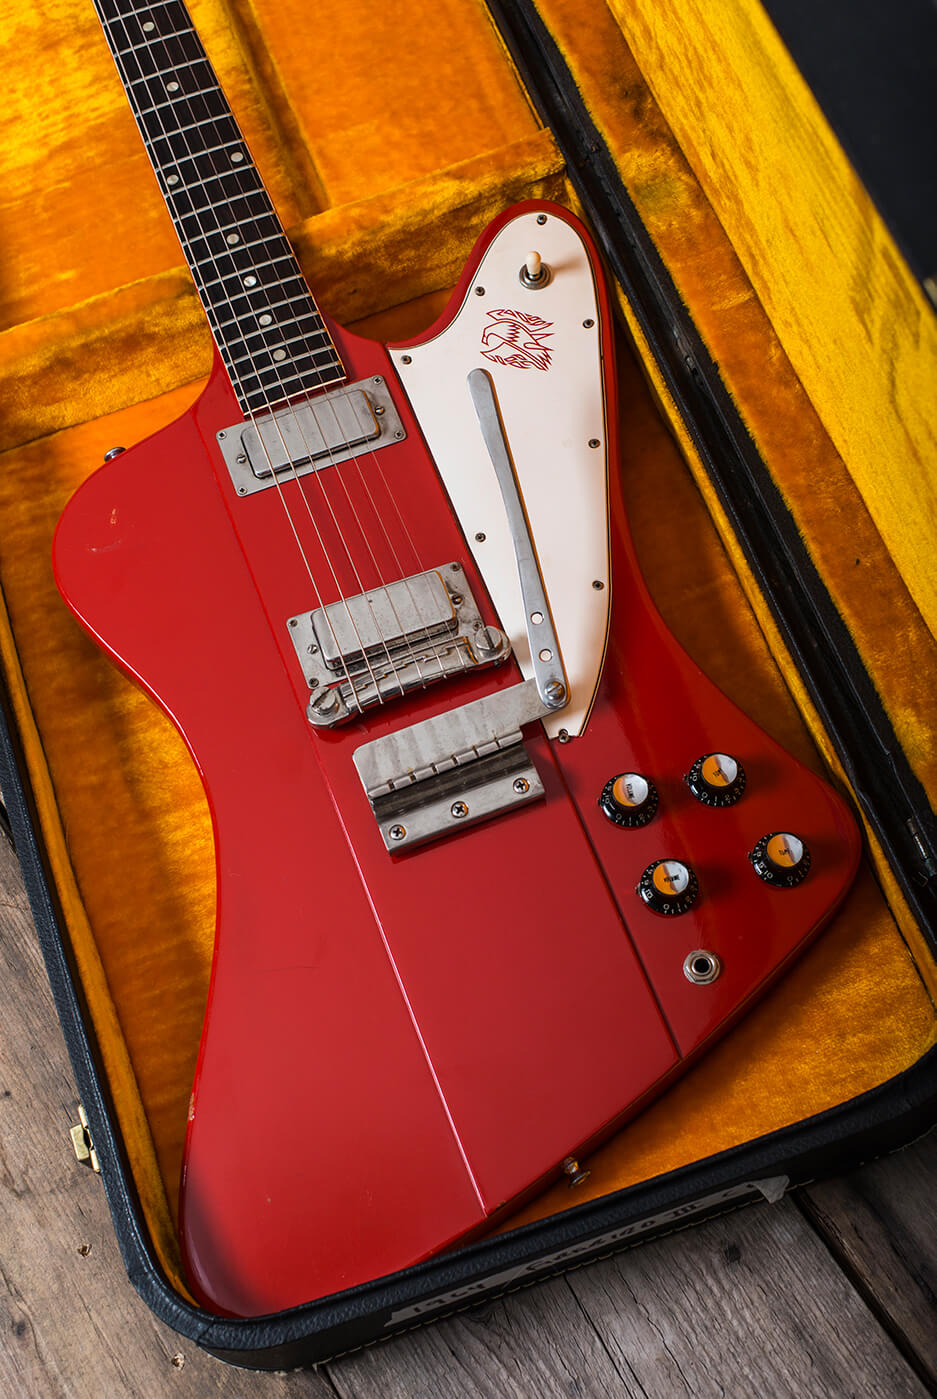 Gibson 1964 Firebird III red in case portrait